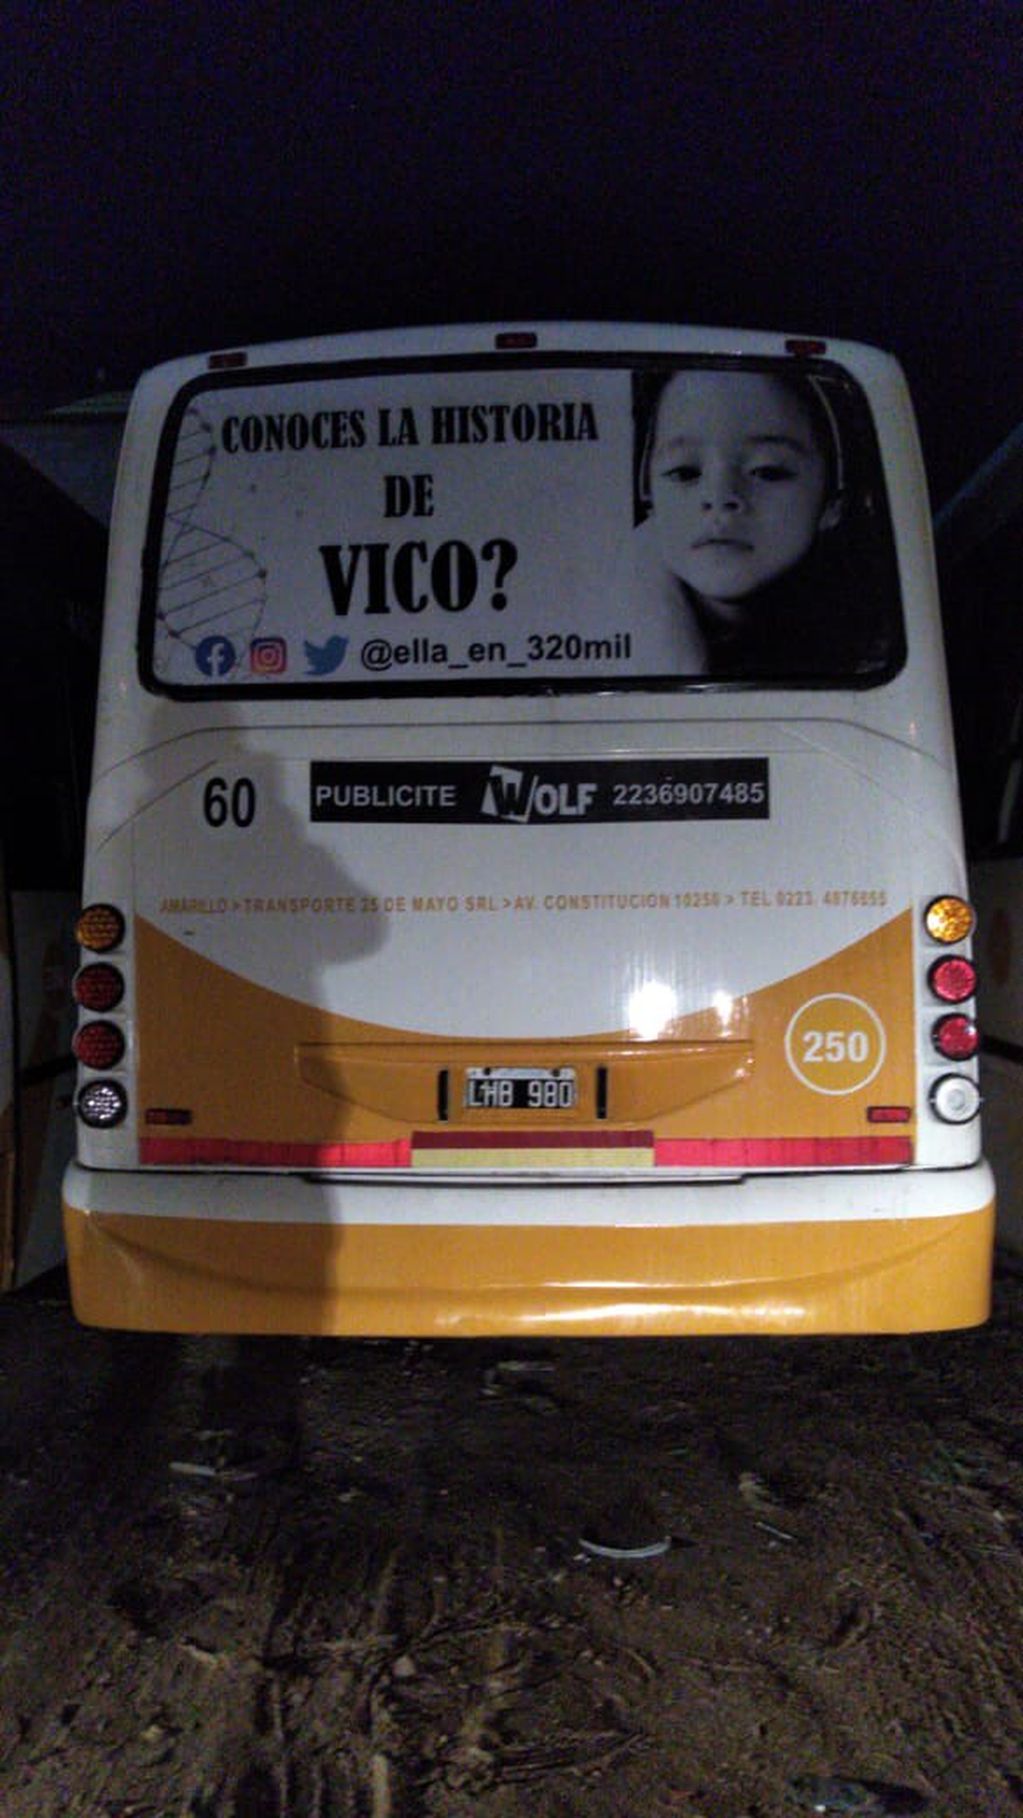 Una agencia de publicidad realizó afiches para difundir la historia de Vico en varios colectivos de Mar del Plata.